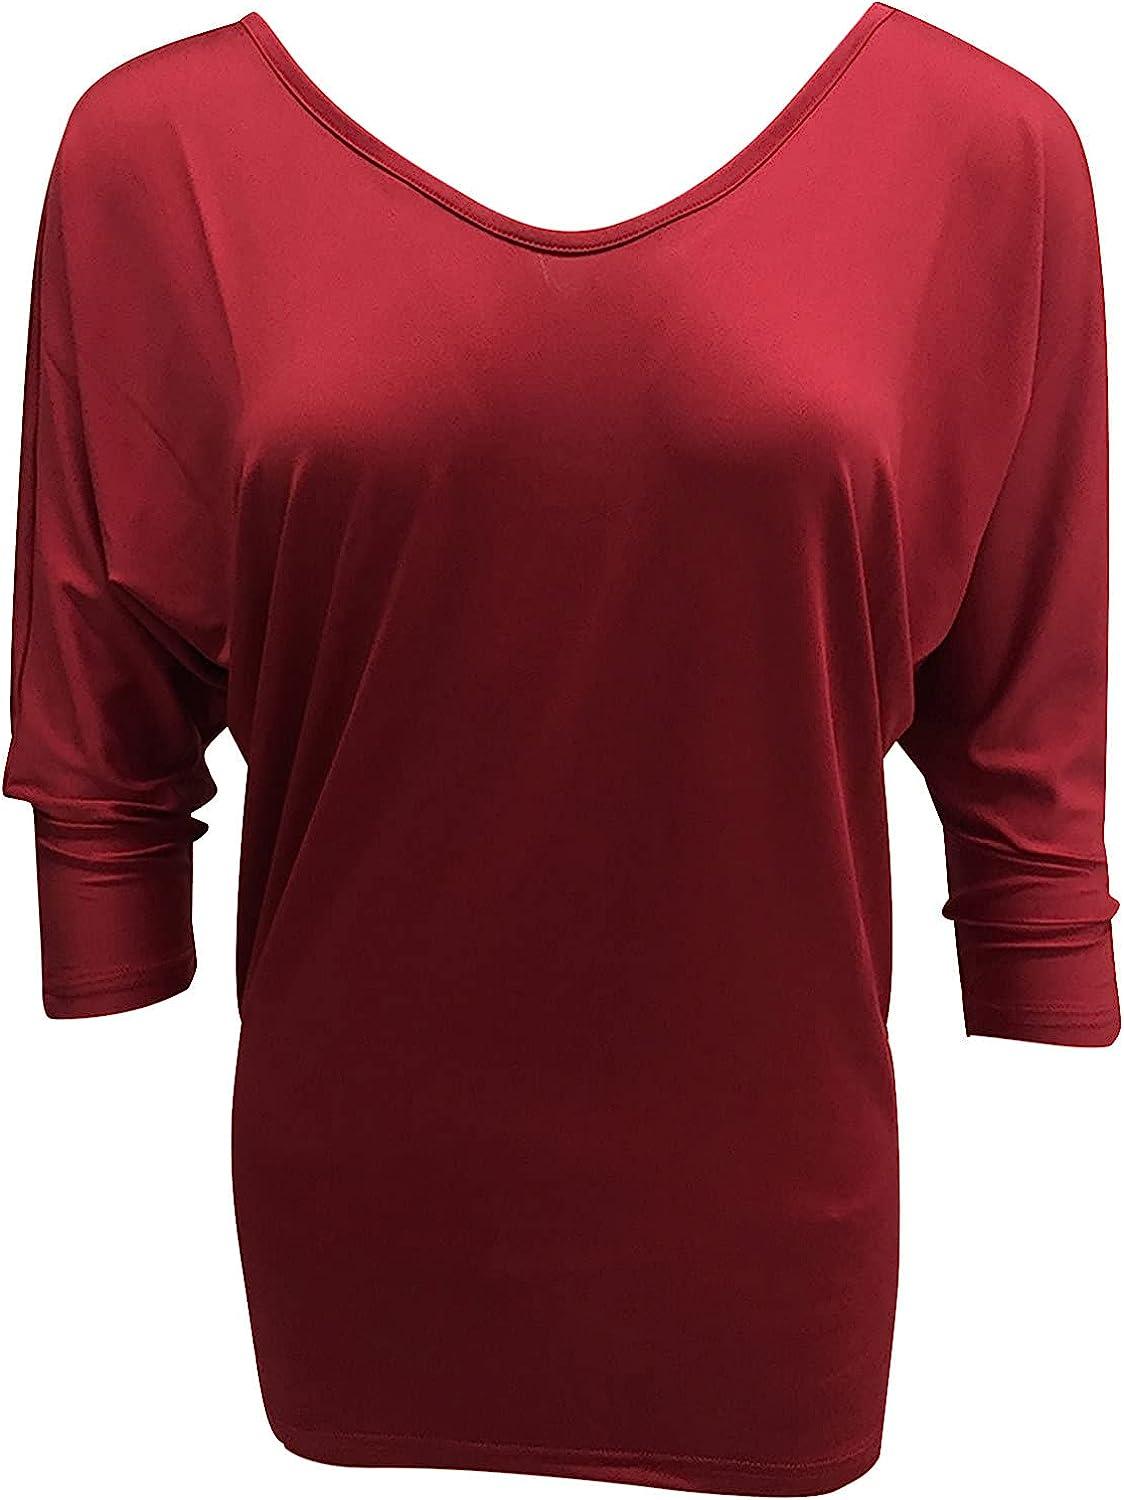 3/4 Sleeve Shirt Women Red Tops for Women Casual Sleeveless Dress